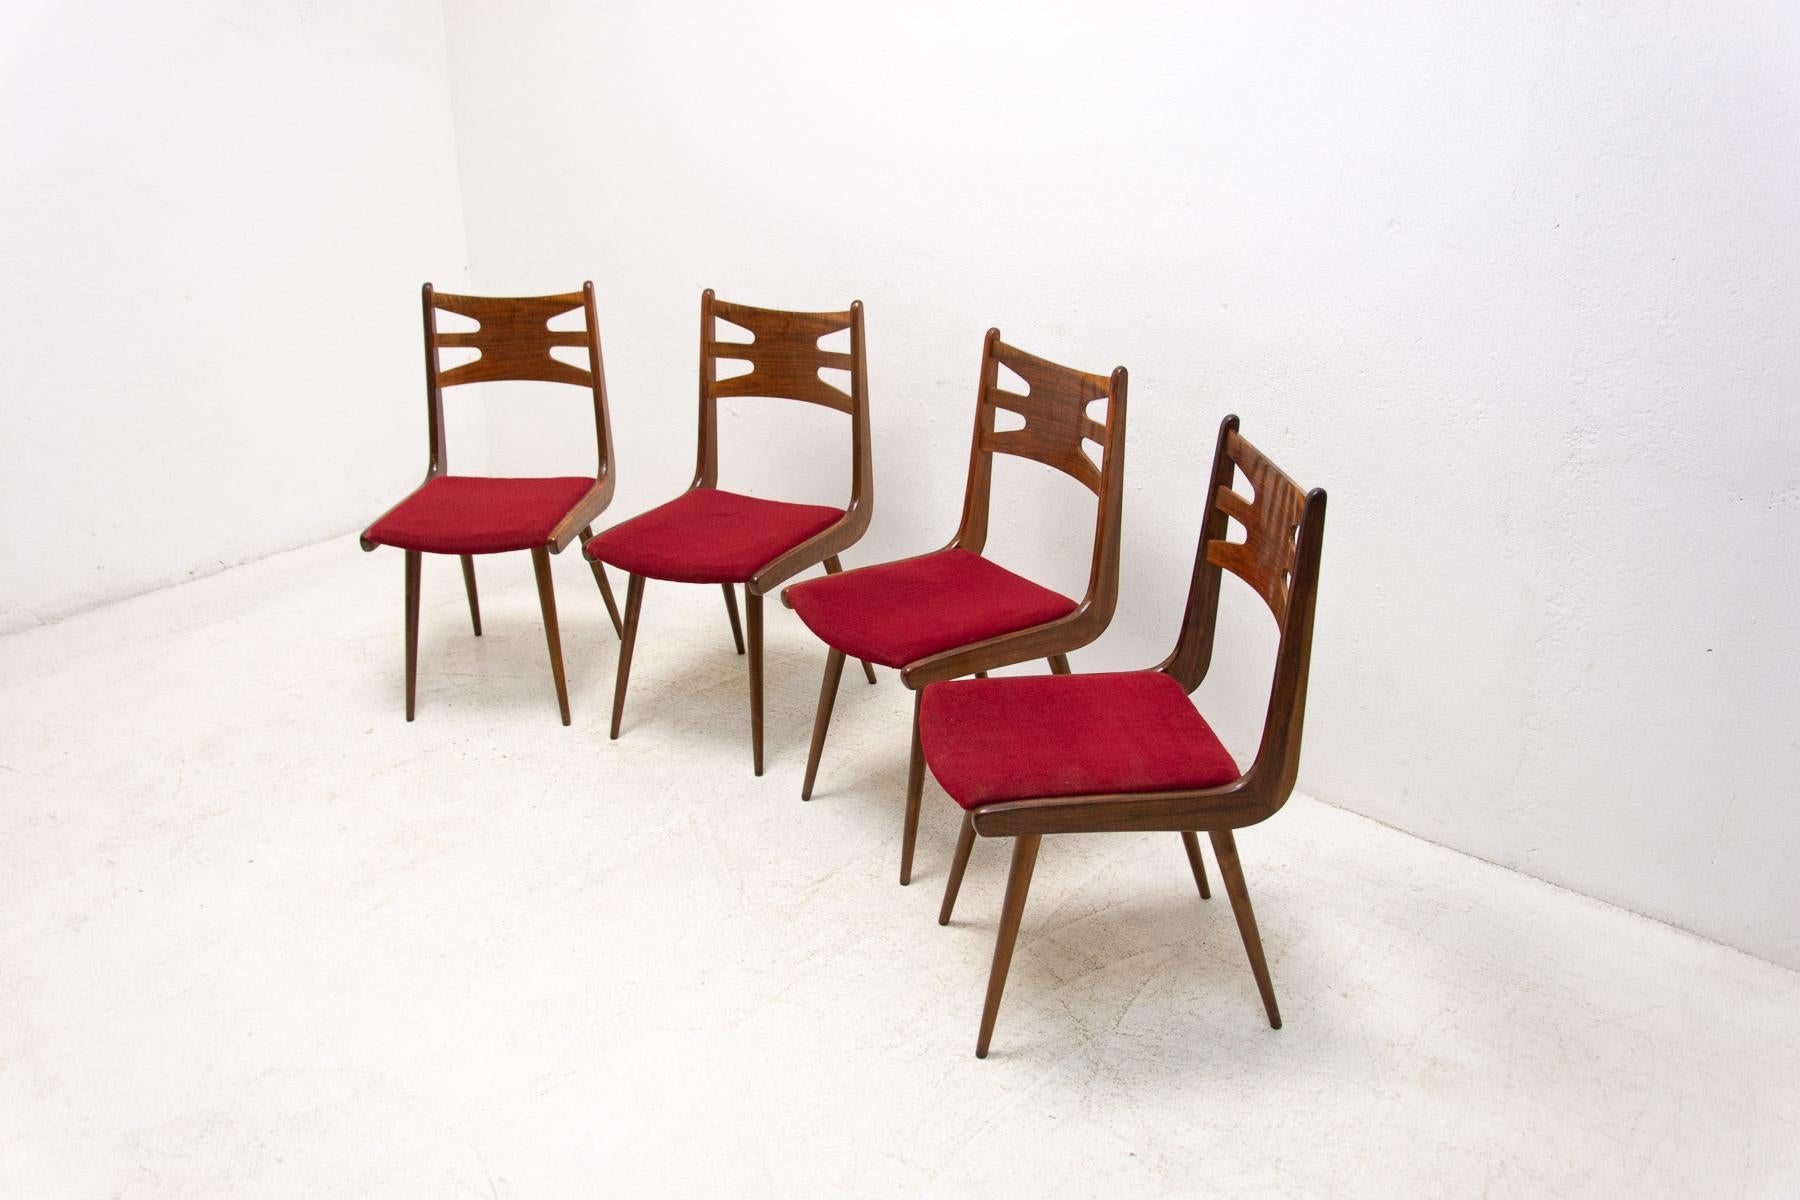 Satz gepolsterte Nussbaum-Esszimmerstühle, 1970er Jahre, Tschechoslowakei (20. Jahrhundert)